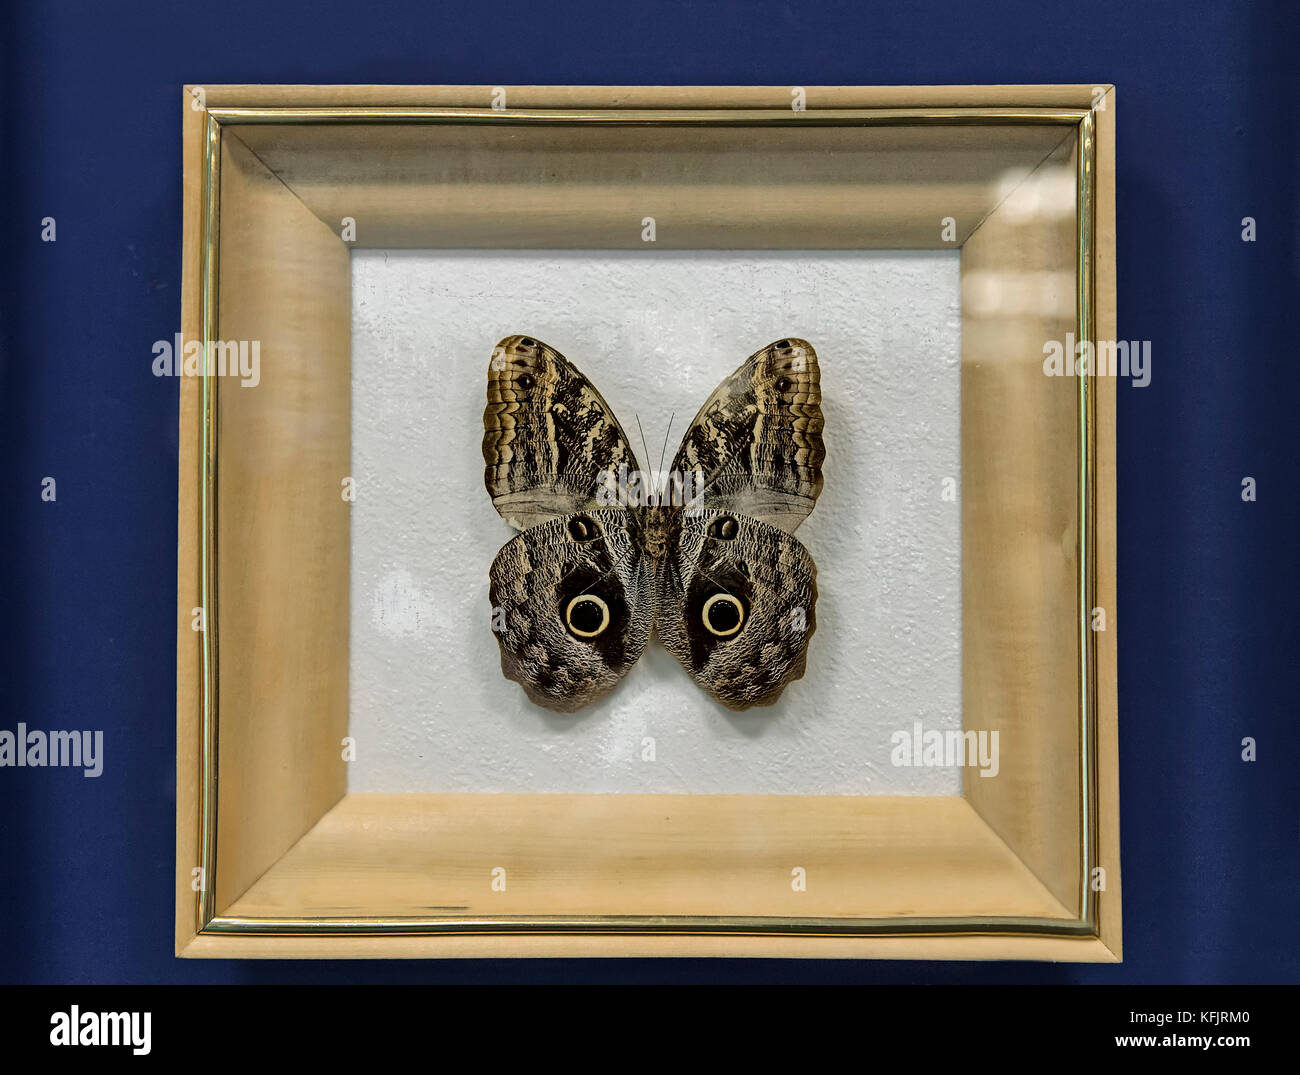 Una instancia de grandes mariposas tropicales del género Caligo illioneus, tiene una envergadura de hasta 160mm. Presentado en un marco acristalado. Foto de stock